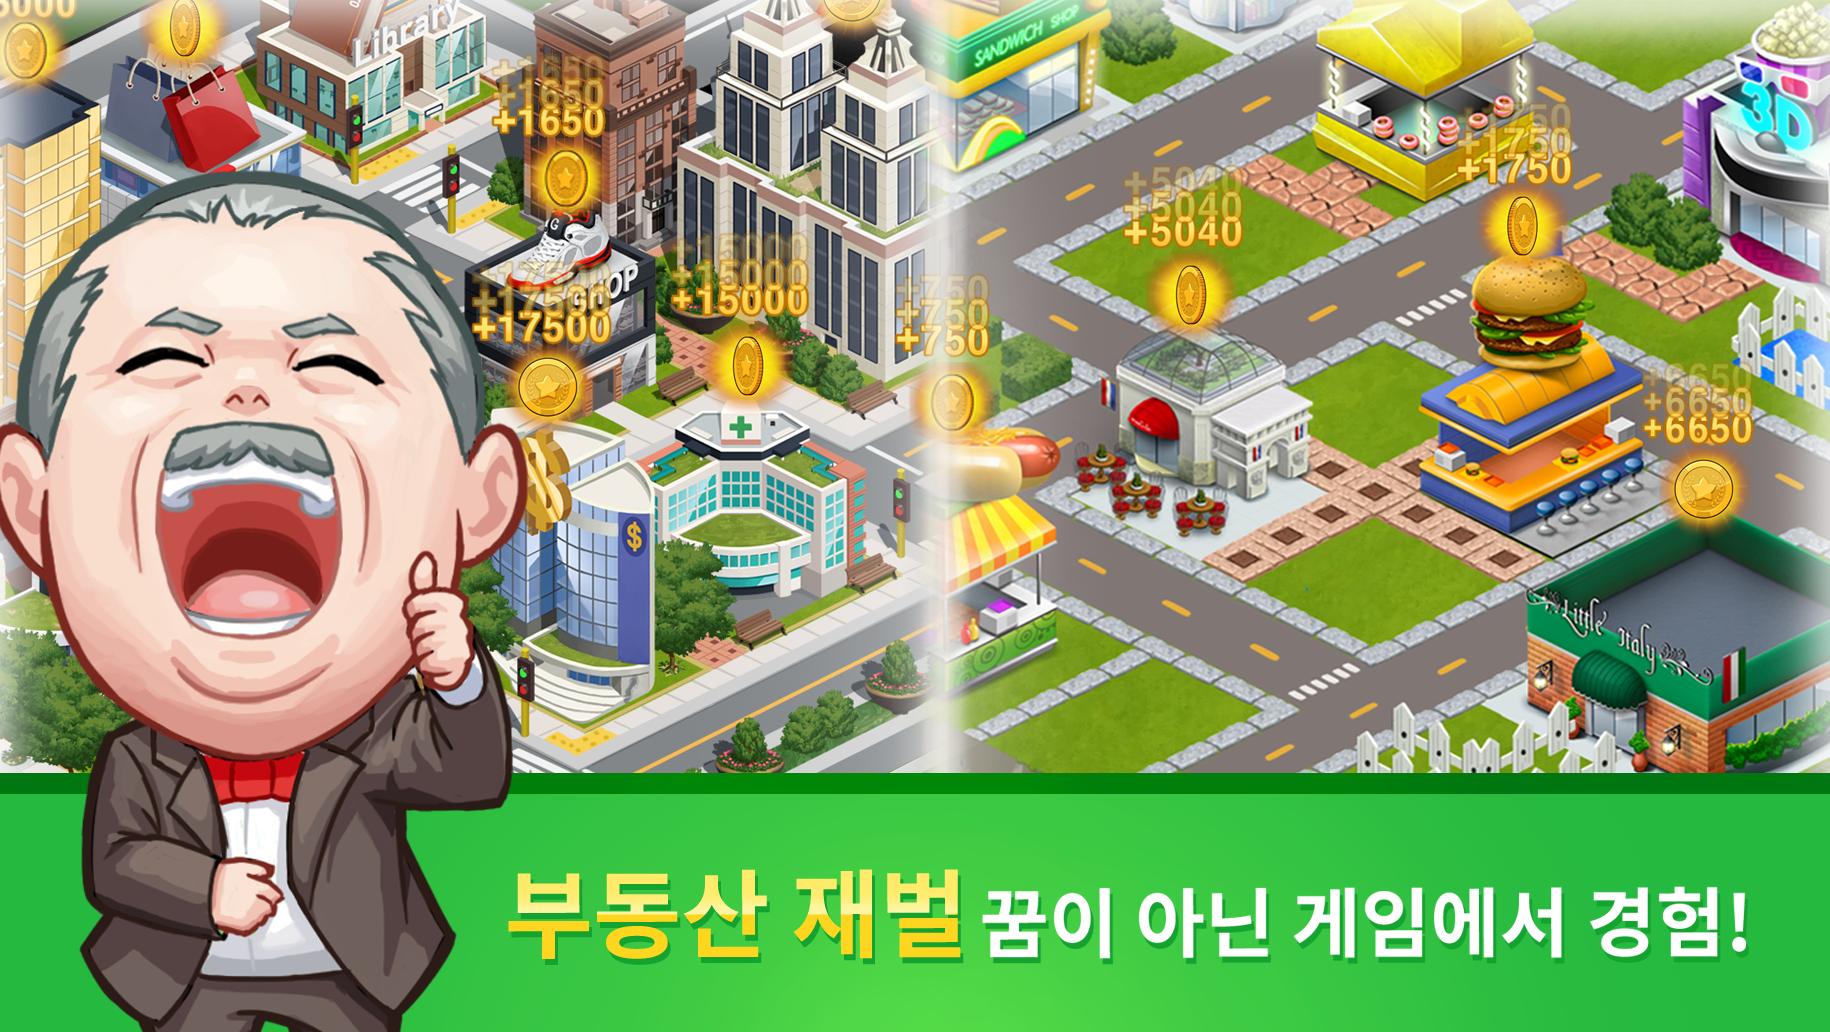 게임오브에셋 경제시뮬레이션 게임 (주식, 부동산, 펀드)